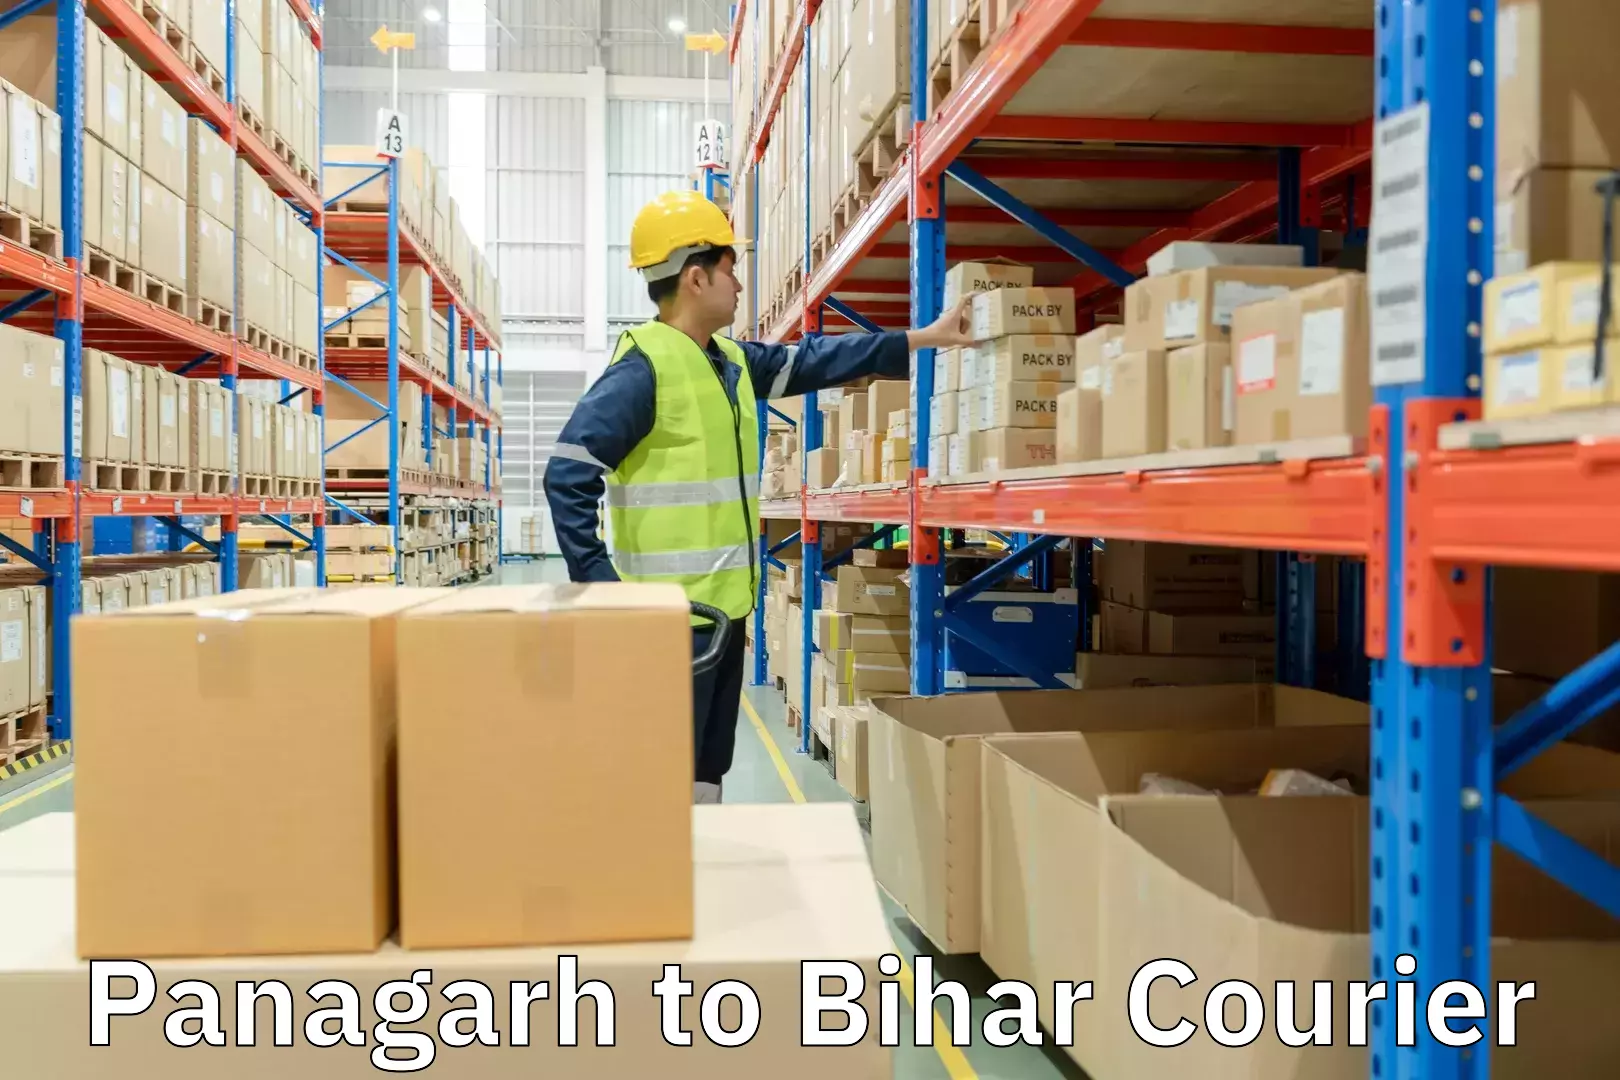 Advanced shipping technology Panagarh to Bihar